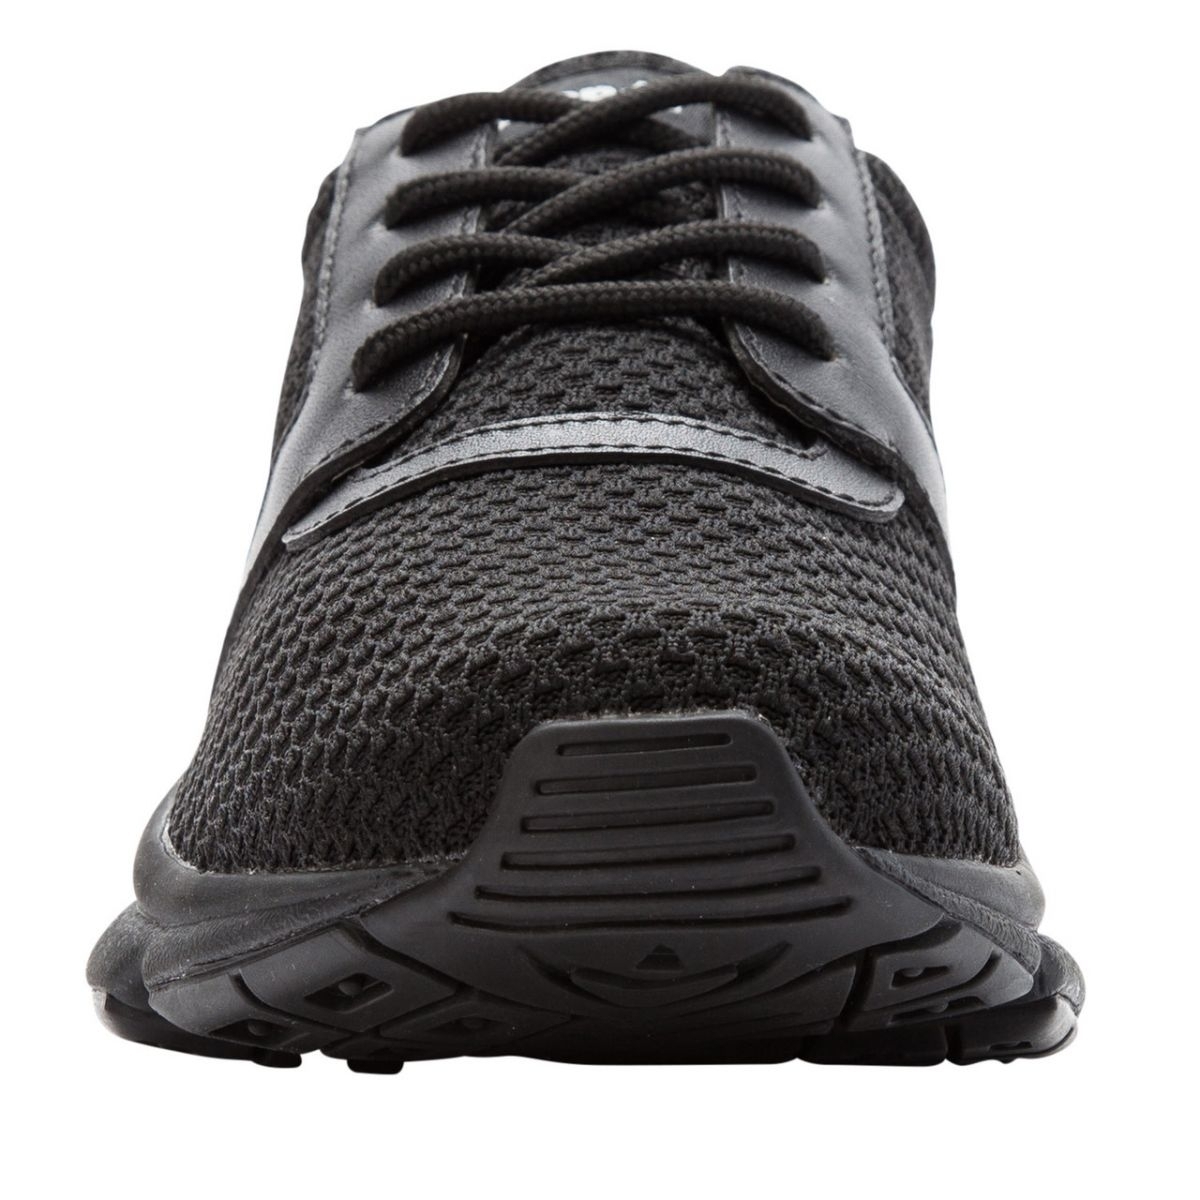 Propet Women's Stability X Walking Shoe Black - WAA032MBLK BLACK - BLACK, 6